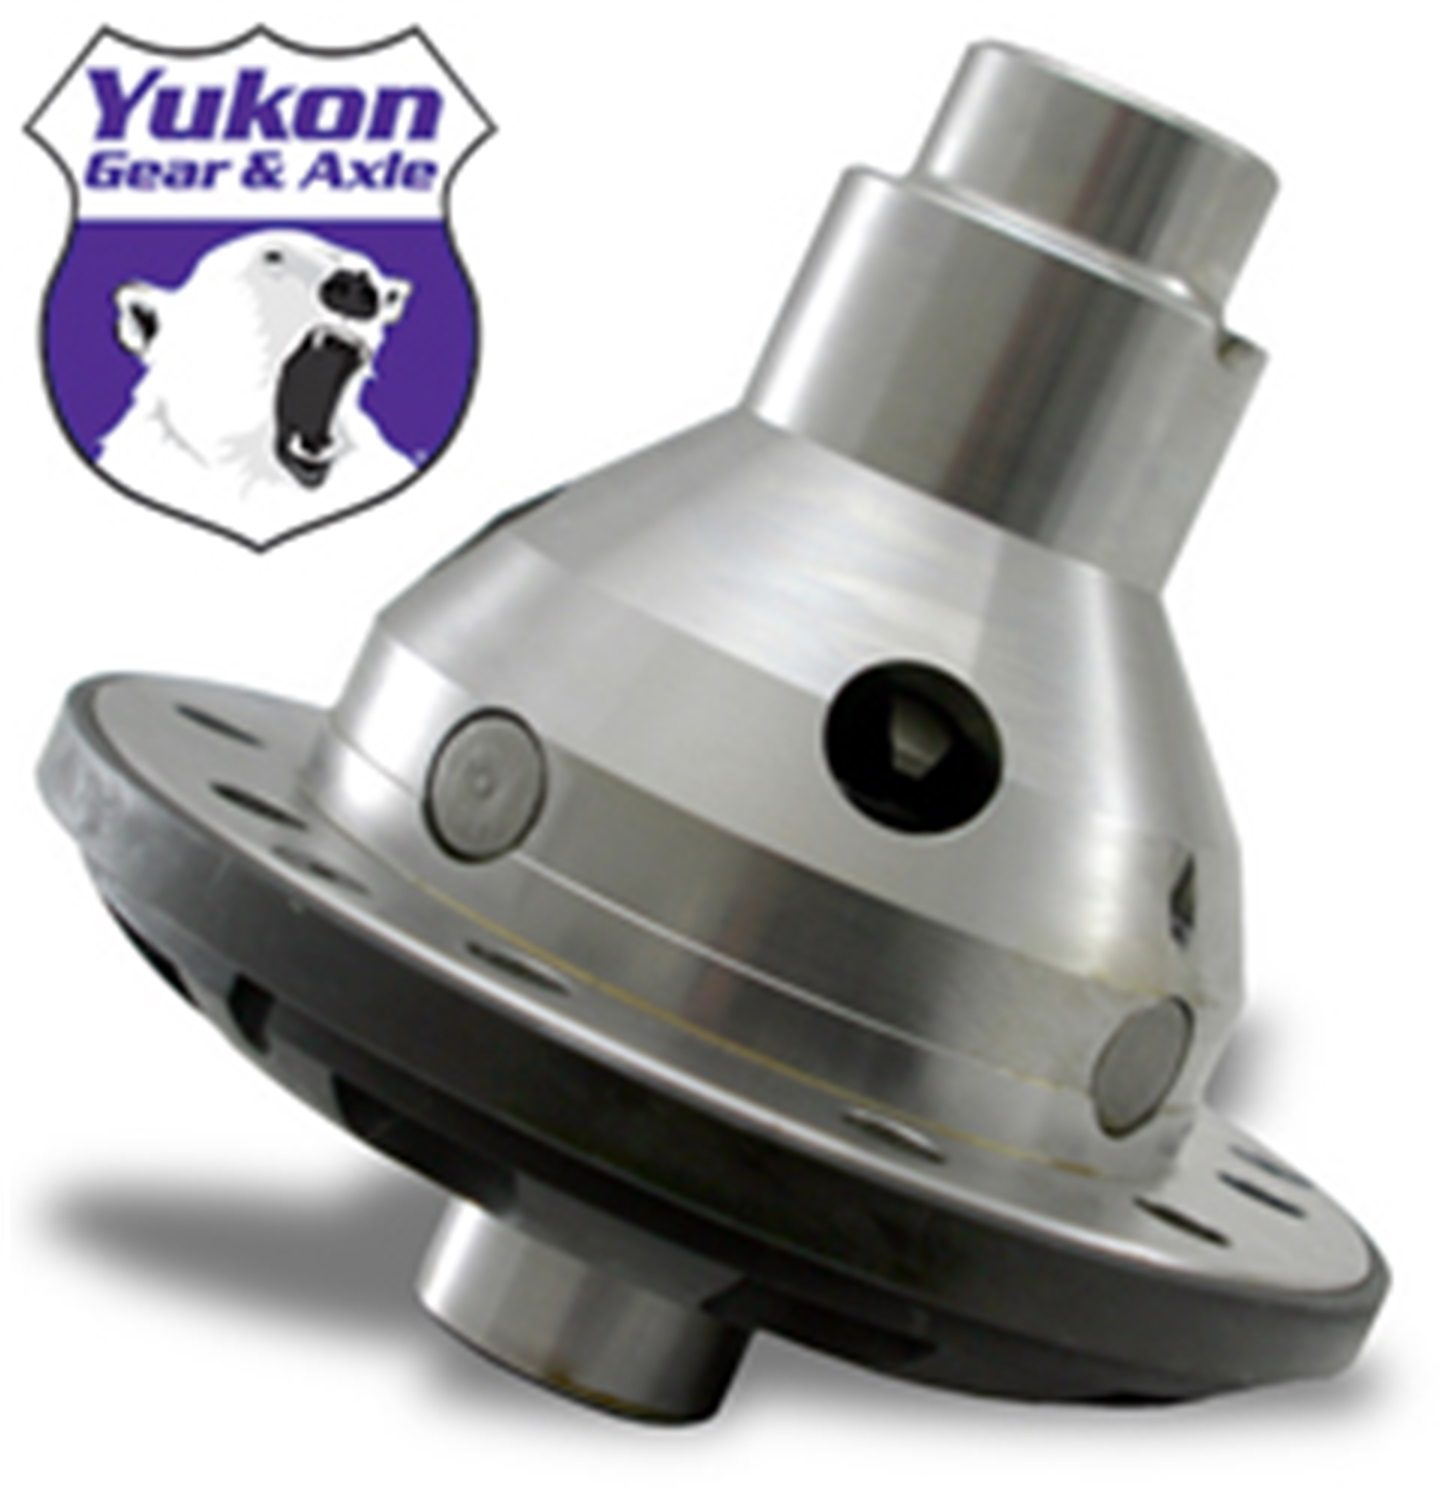 Yukon Gear & Axle Yukon Gear & Axle YDGF9-31-AG Yukon Trac-Loc Differential